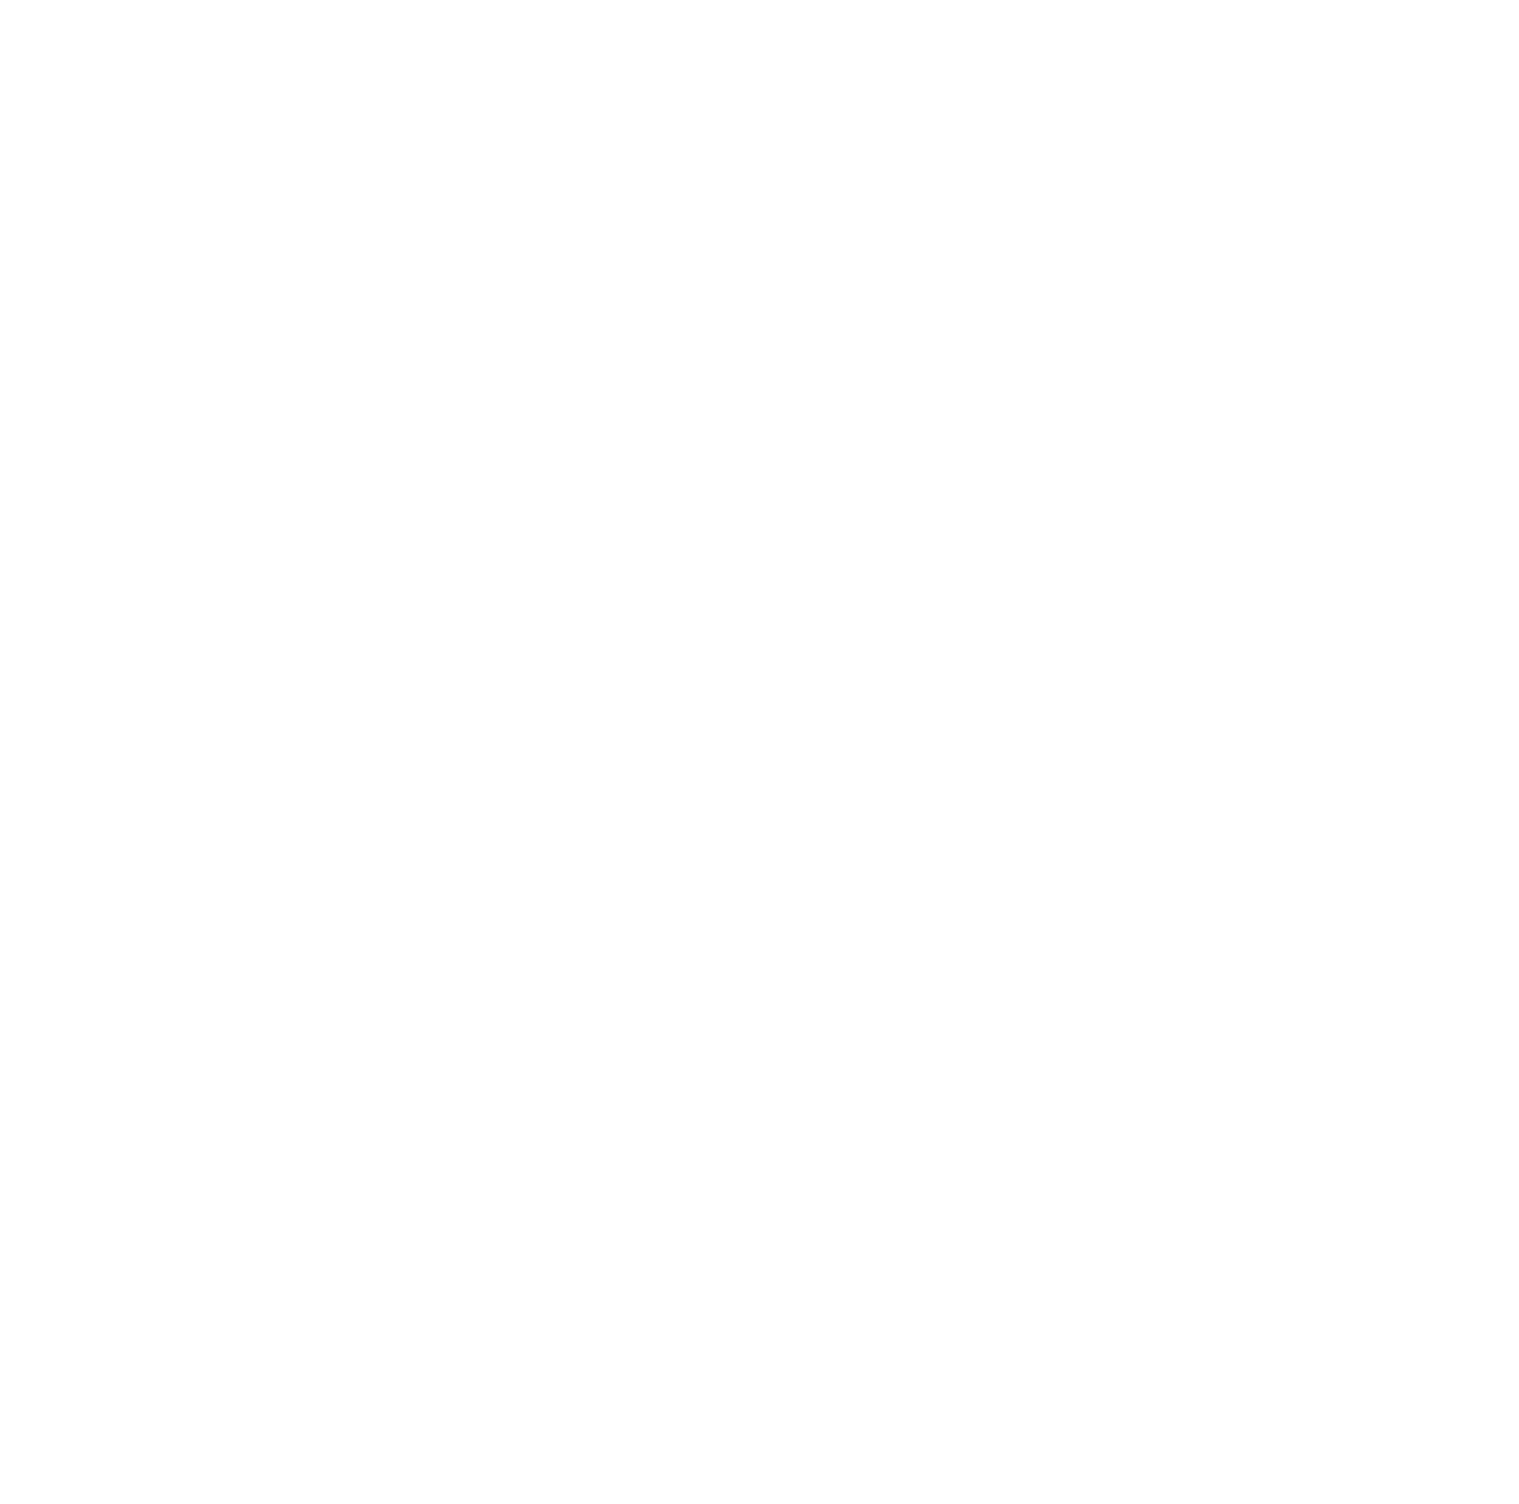 Wemade logo pour fonds sombres (PNG transparent)